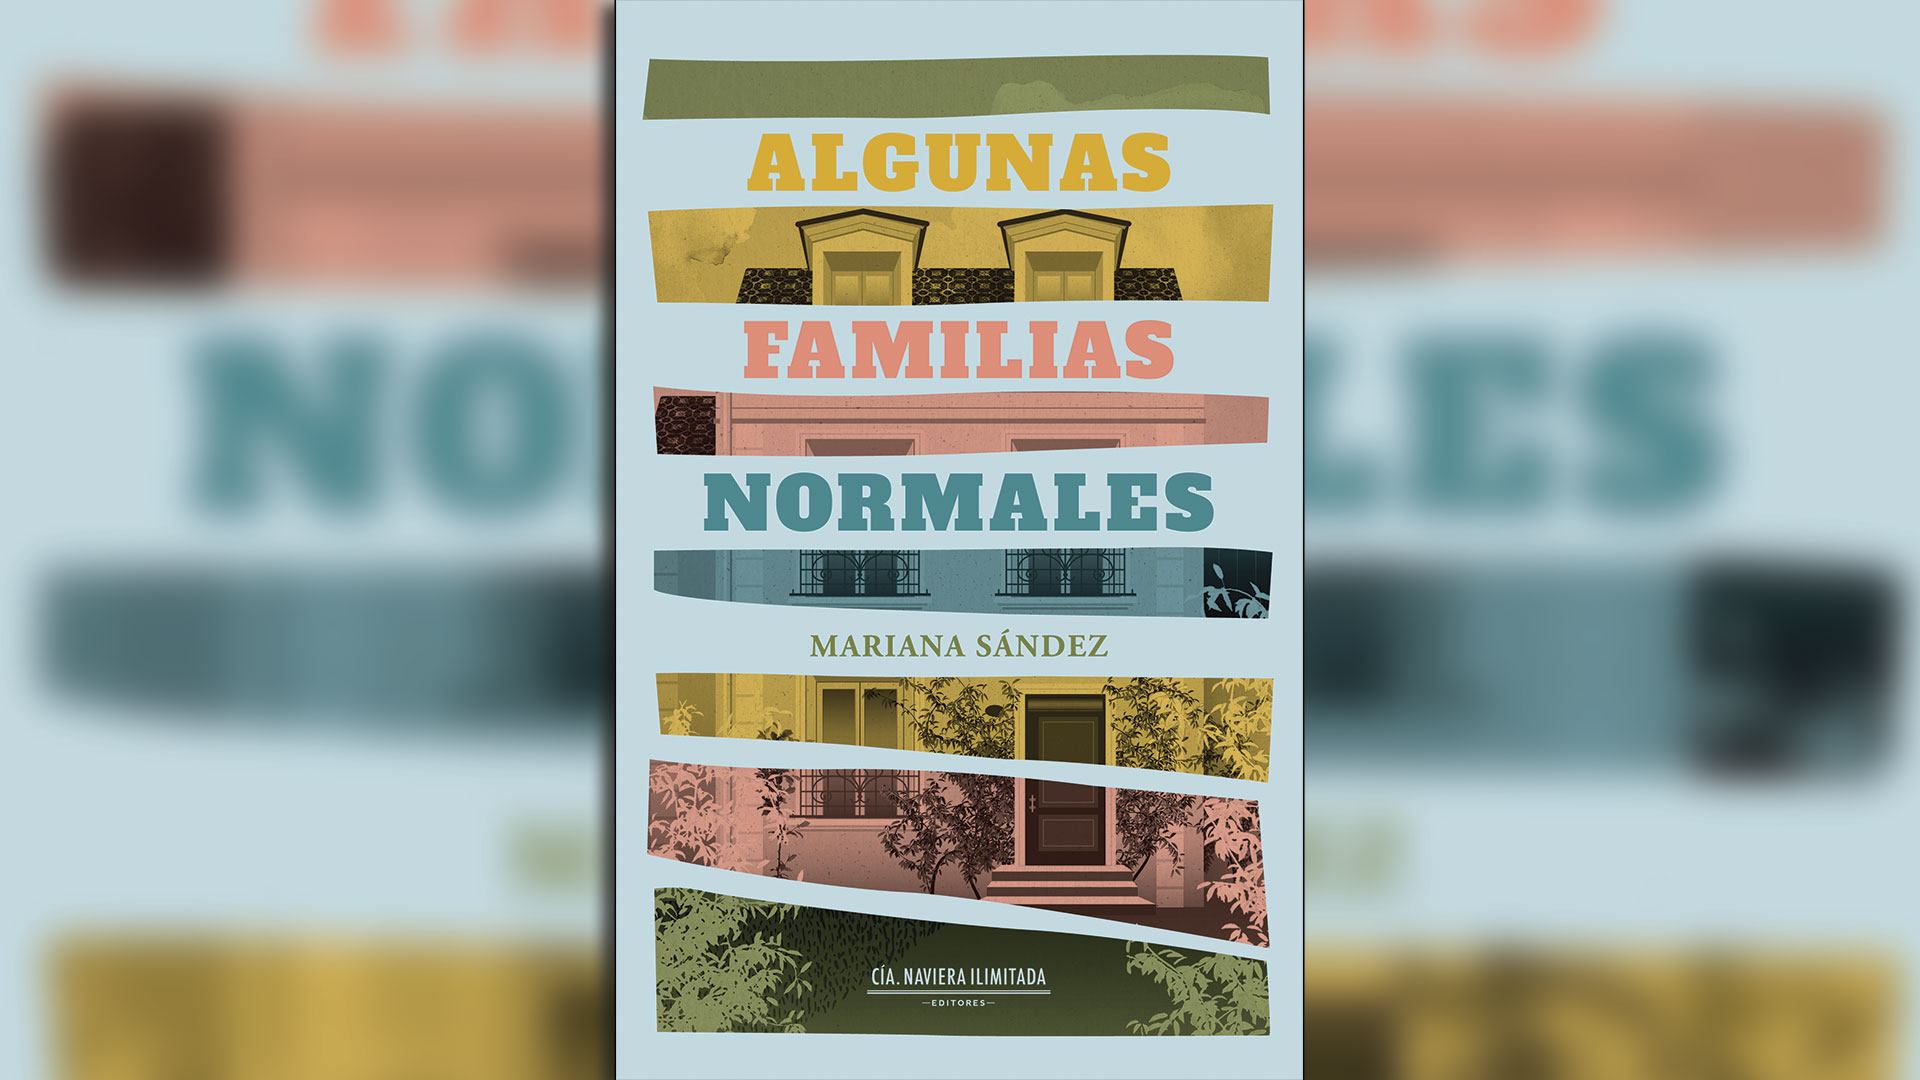 “Algunas familias normales”: lazos afectivos en comunidades involuntarias